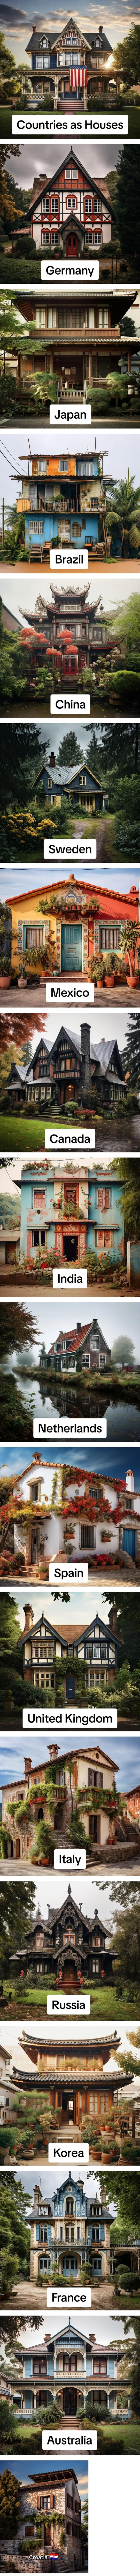 AI로 각 나라의 집 이미지 표현한 결과 ㄷ..JPG